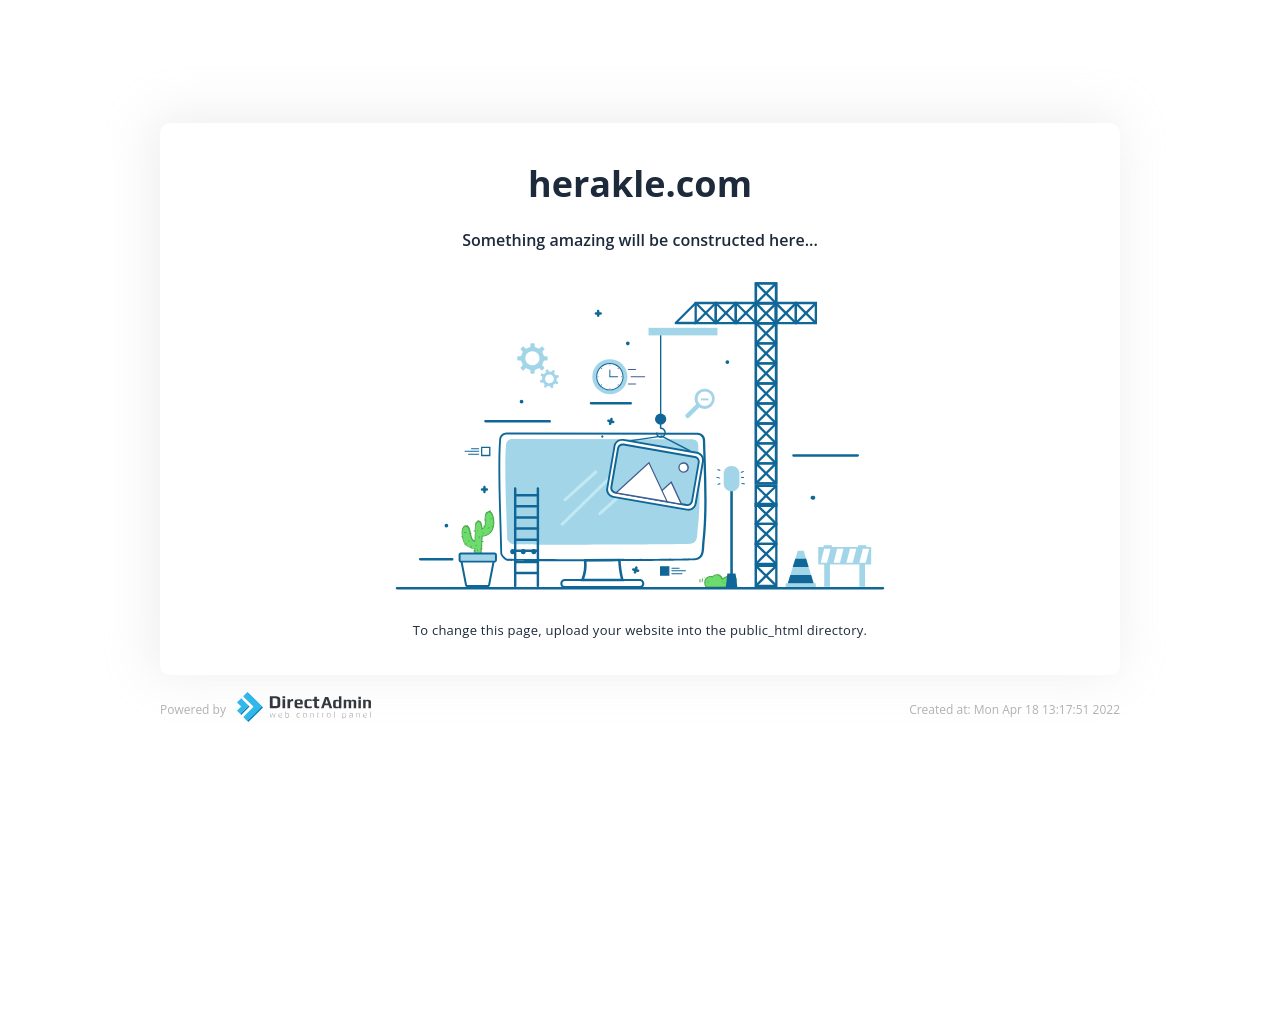 herakle.com